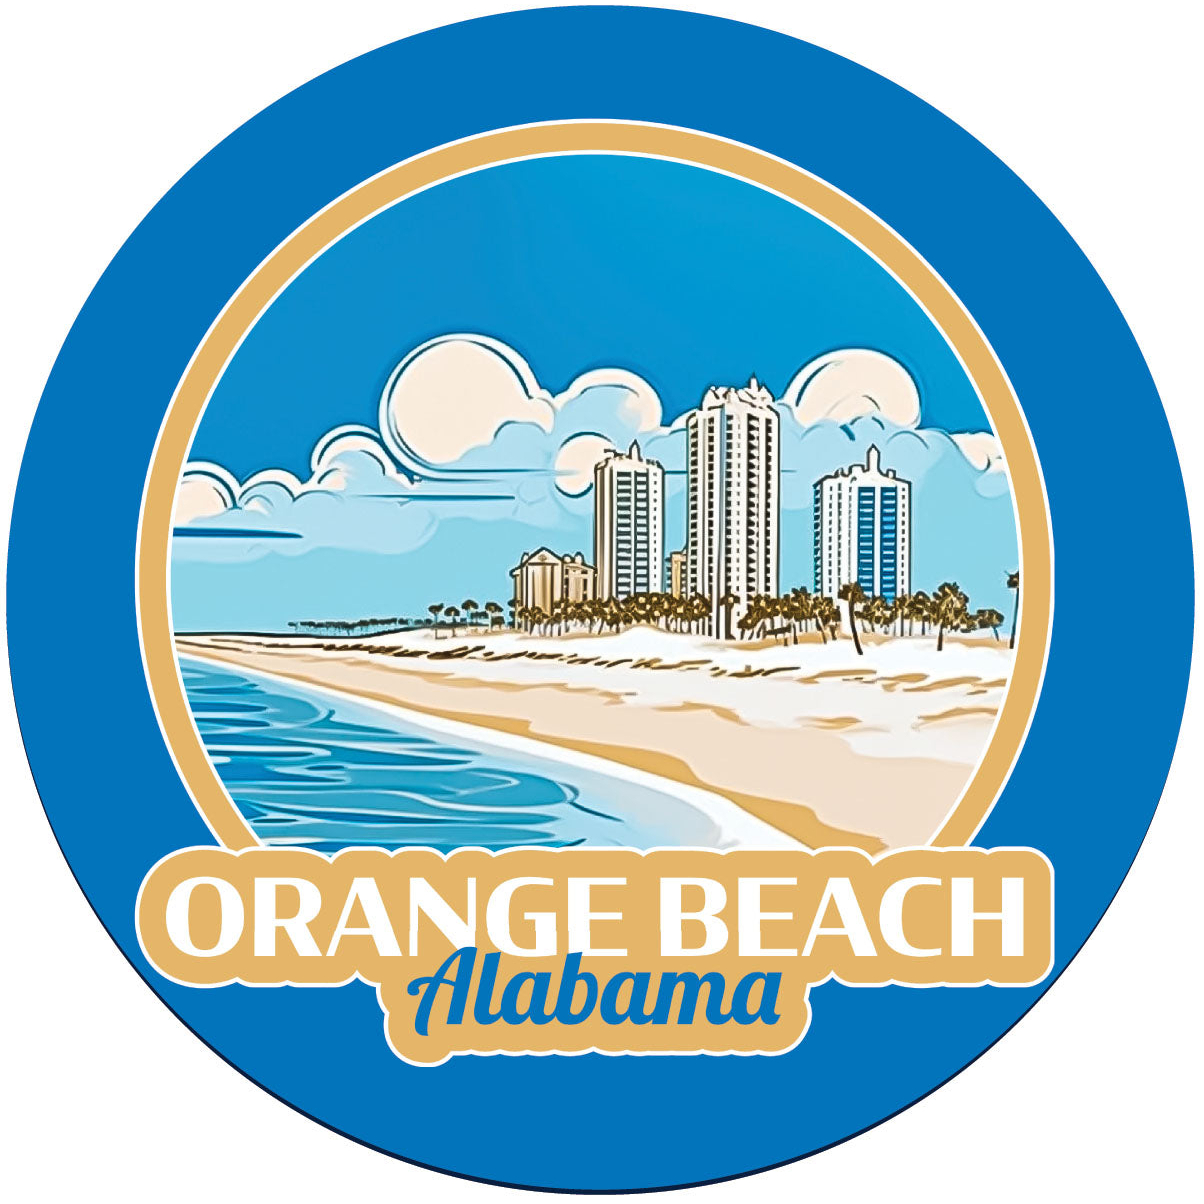 Orange Beach Alabama Design A Souvenir Round Vinyl Decal Sticker - 6-Inch